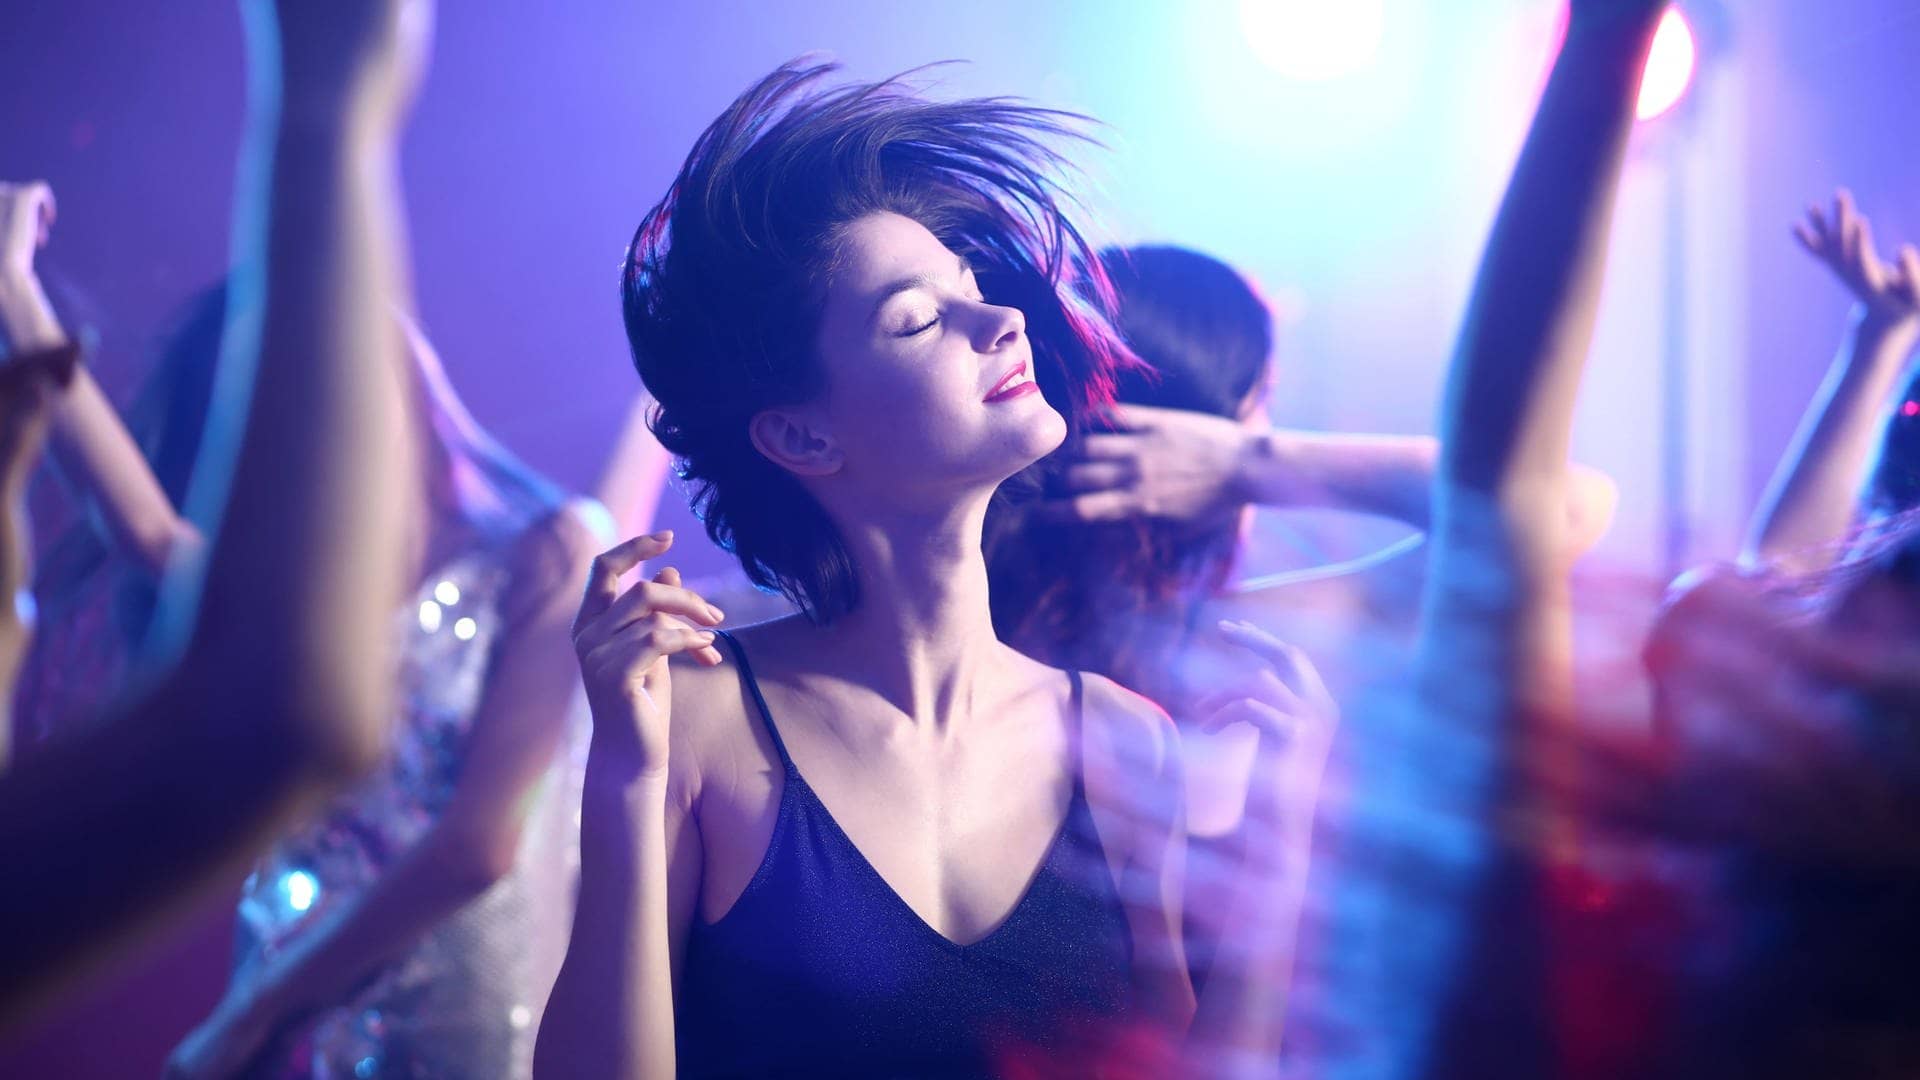 Junge F rau in Kleid tanzt mit geschlossenen Augen im Scheinwerferlicht auf einer Party (Foto: Adobe Stock, Adobe Stock/Pixel-Shot)